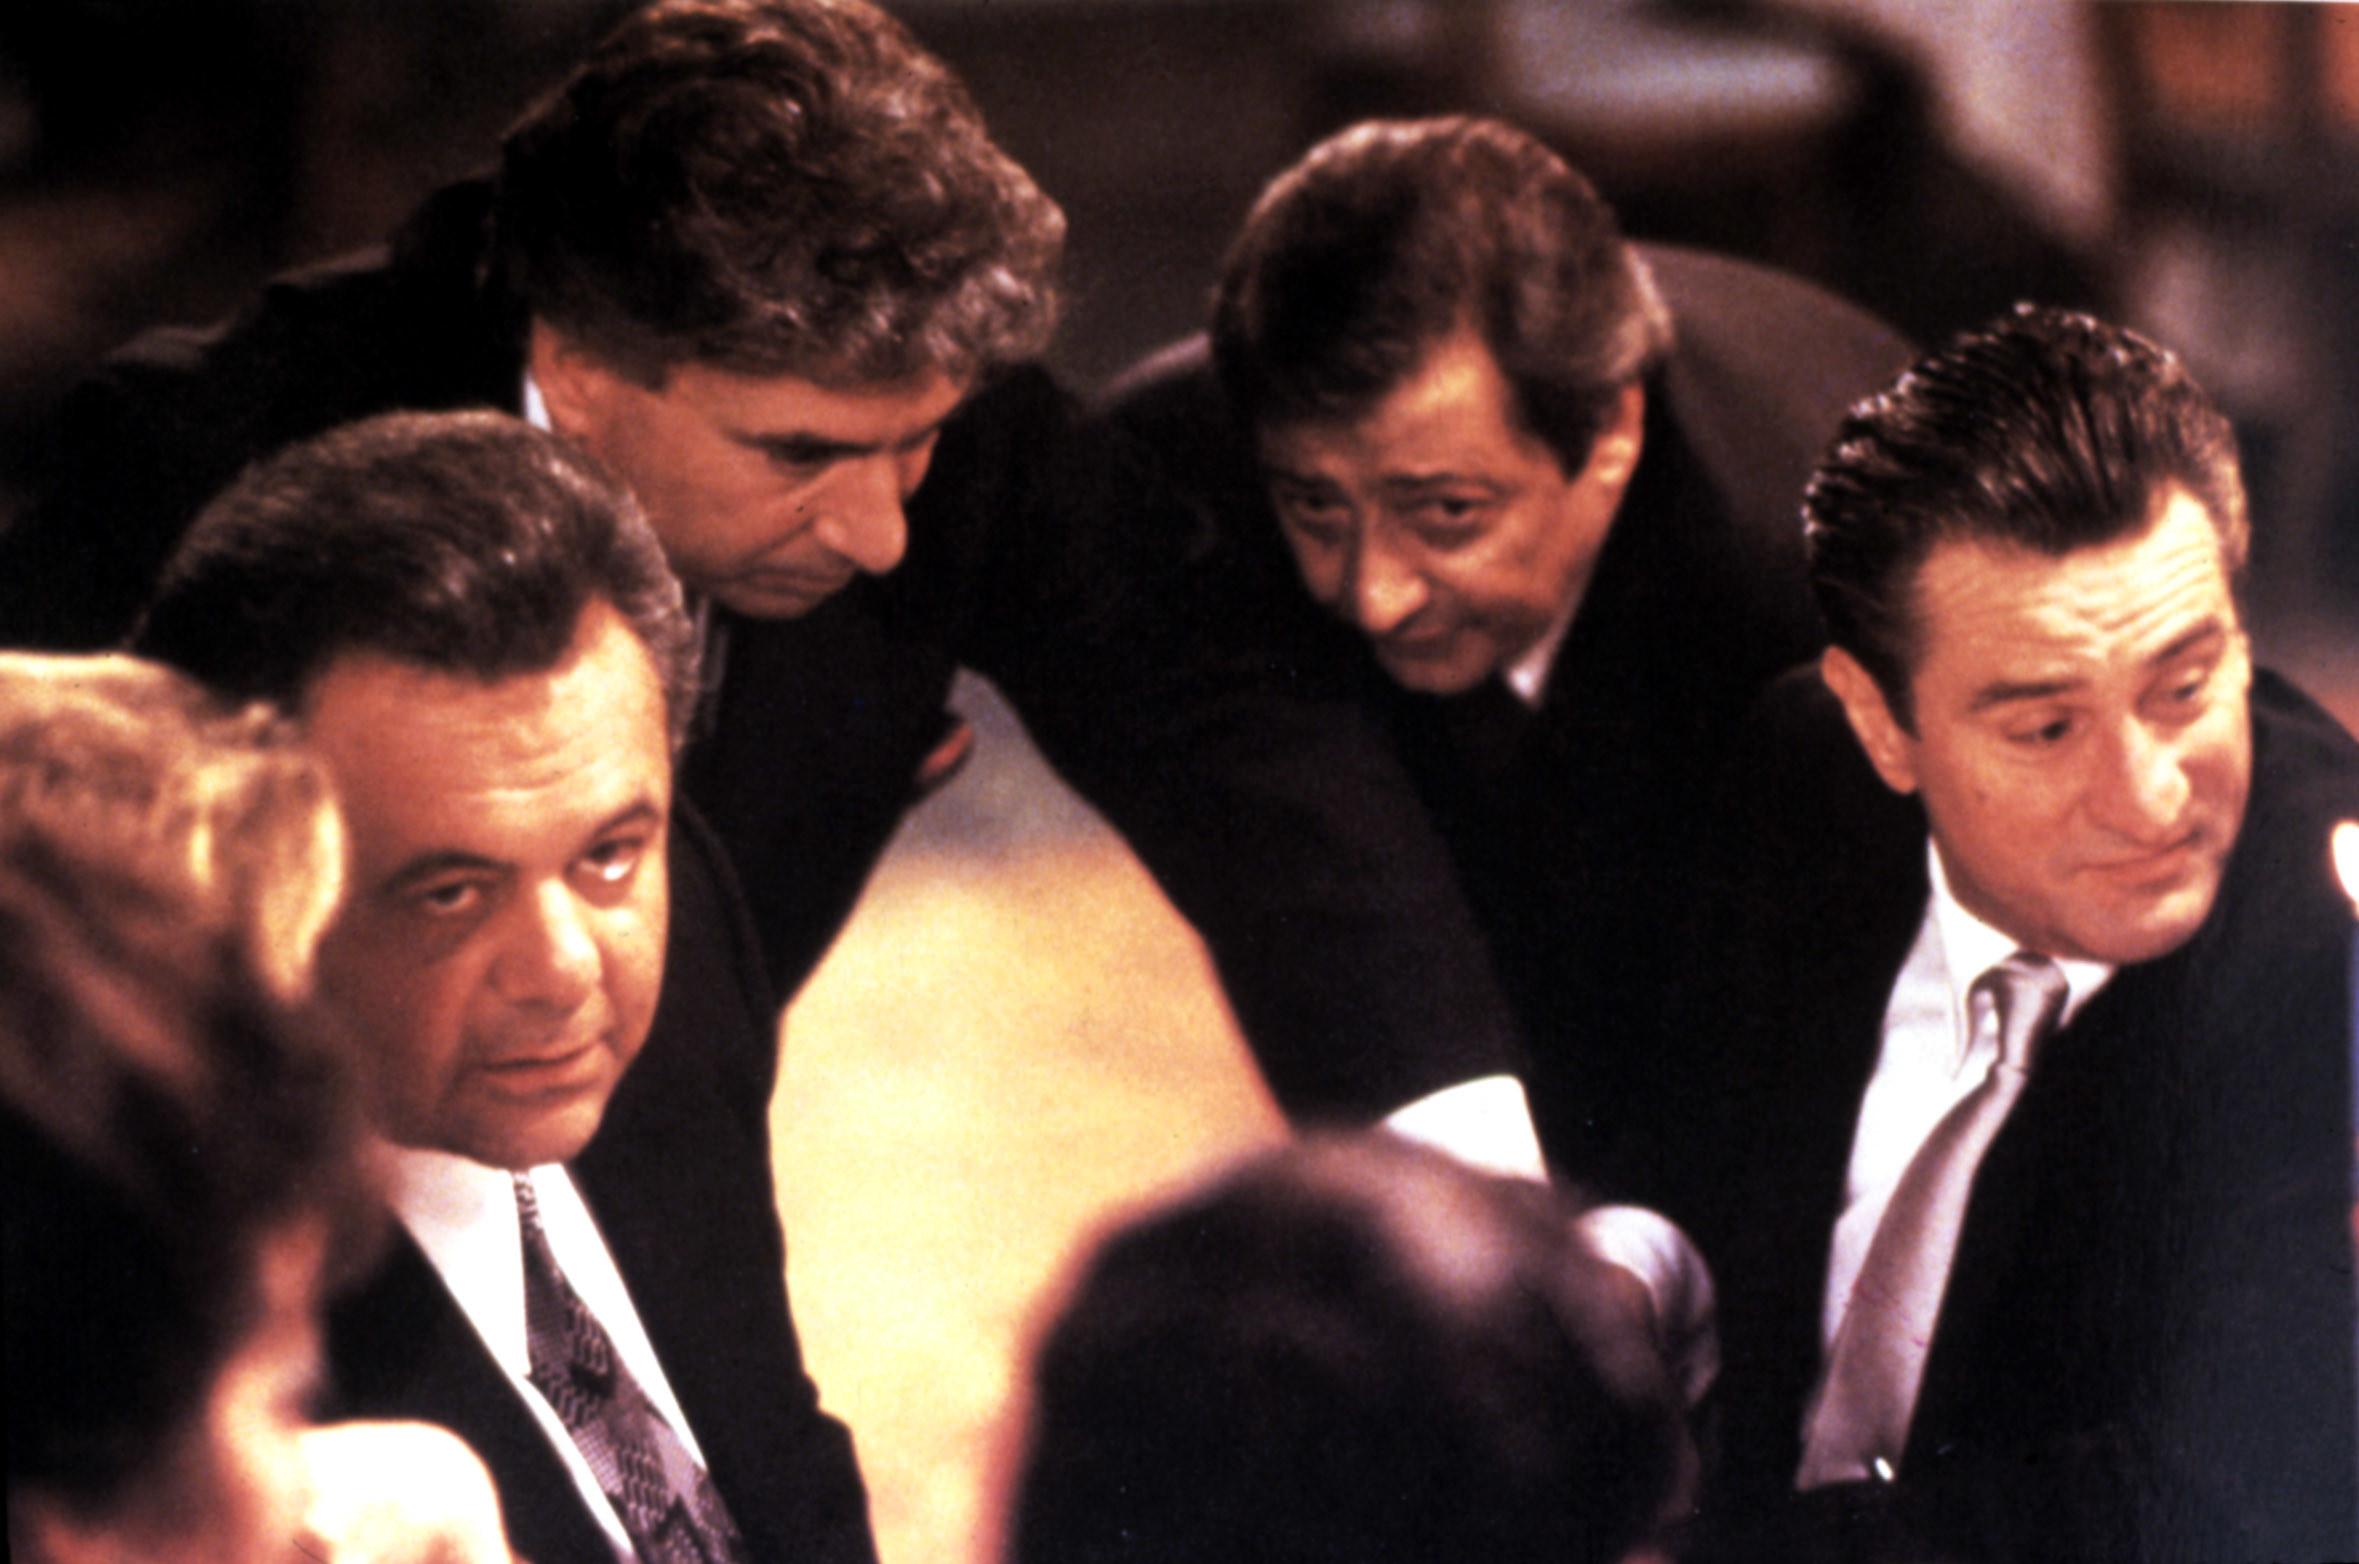 Cast of the movie, including Paul Sorvino and Robert De Niro